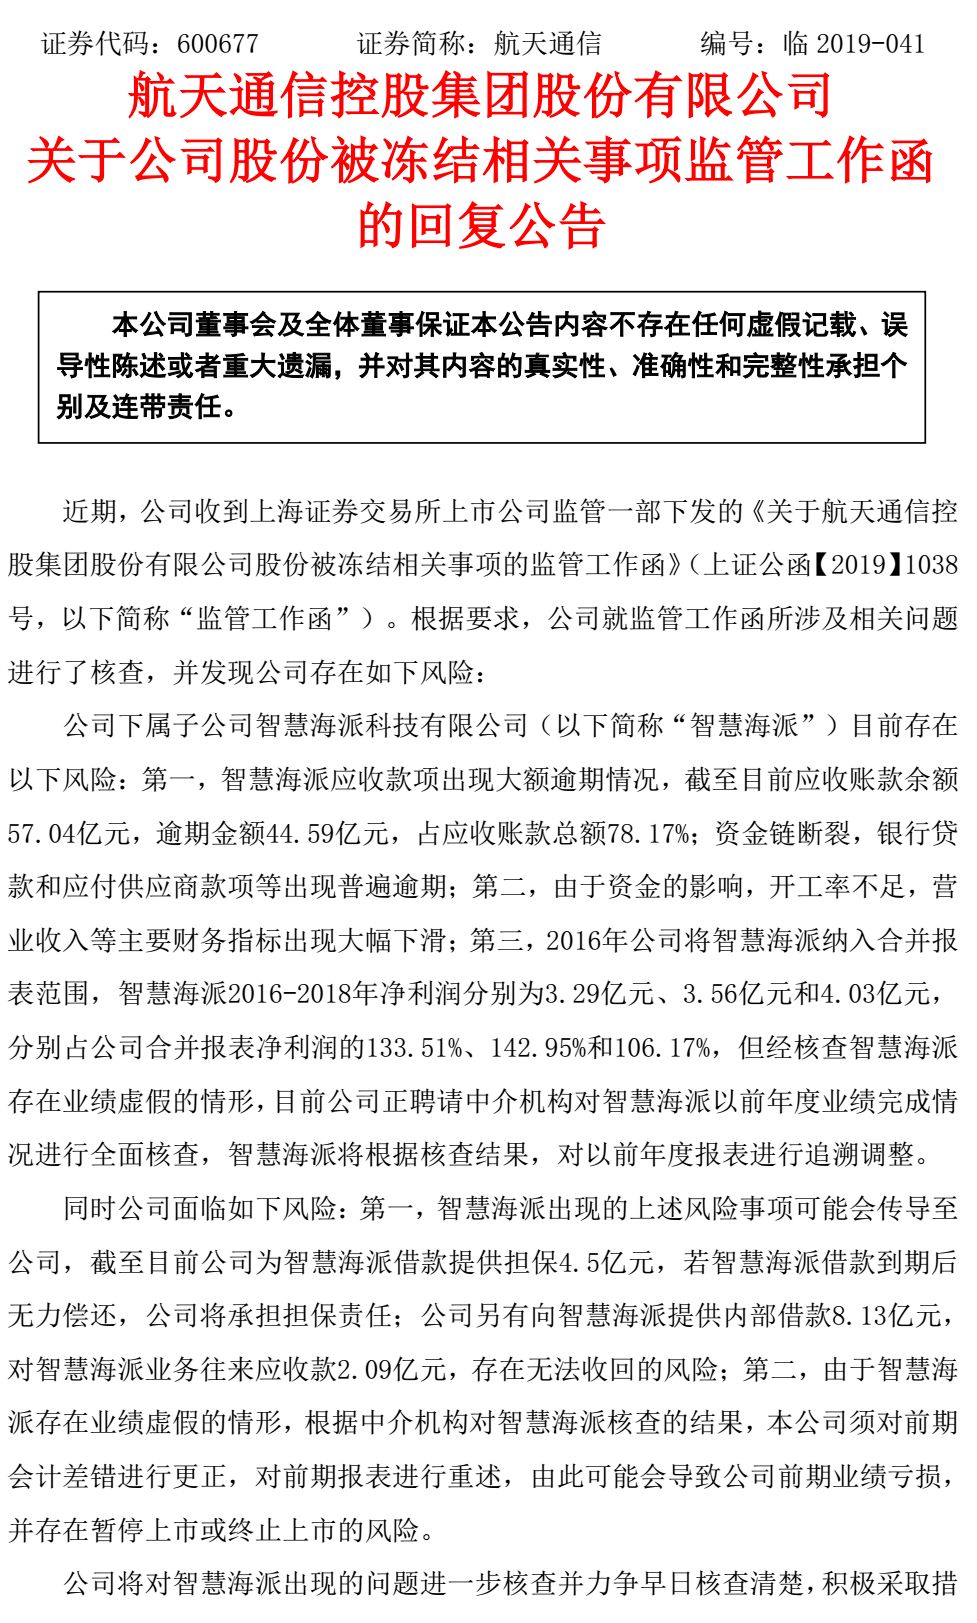 根据公告,智慧海派原总经理邹永杭已被南昌经济技术开发区人民检察院